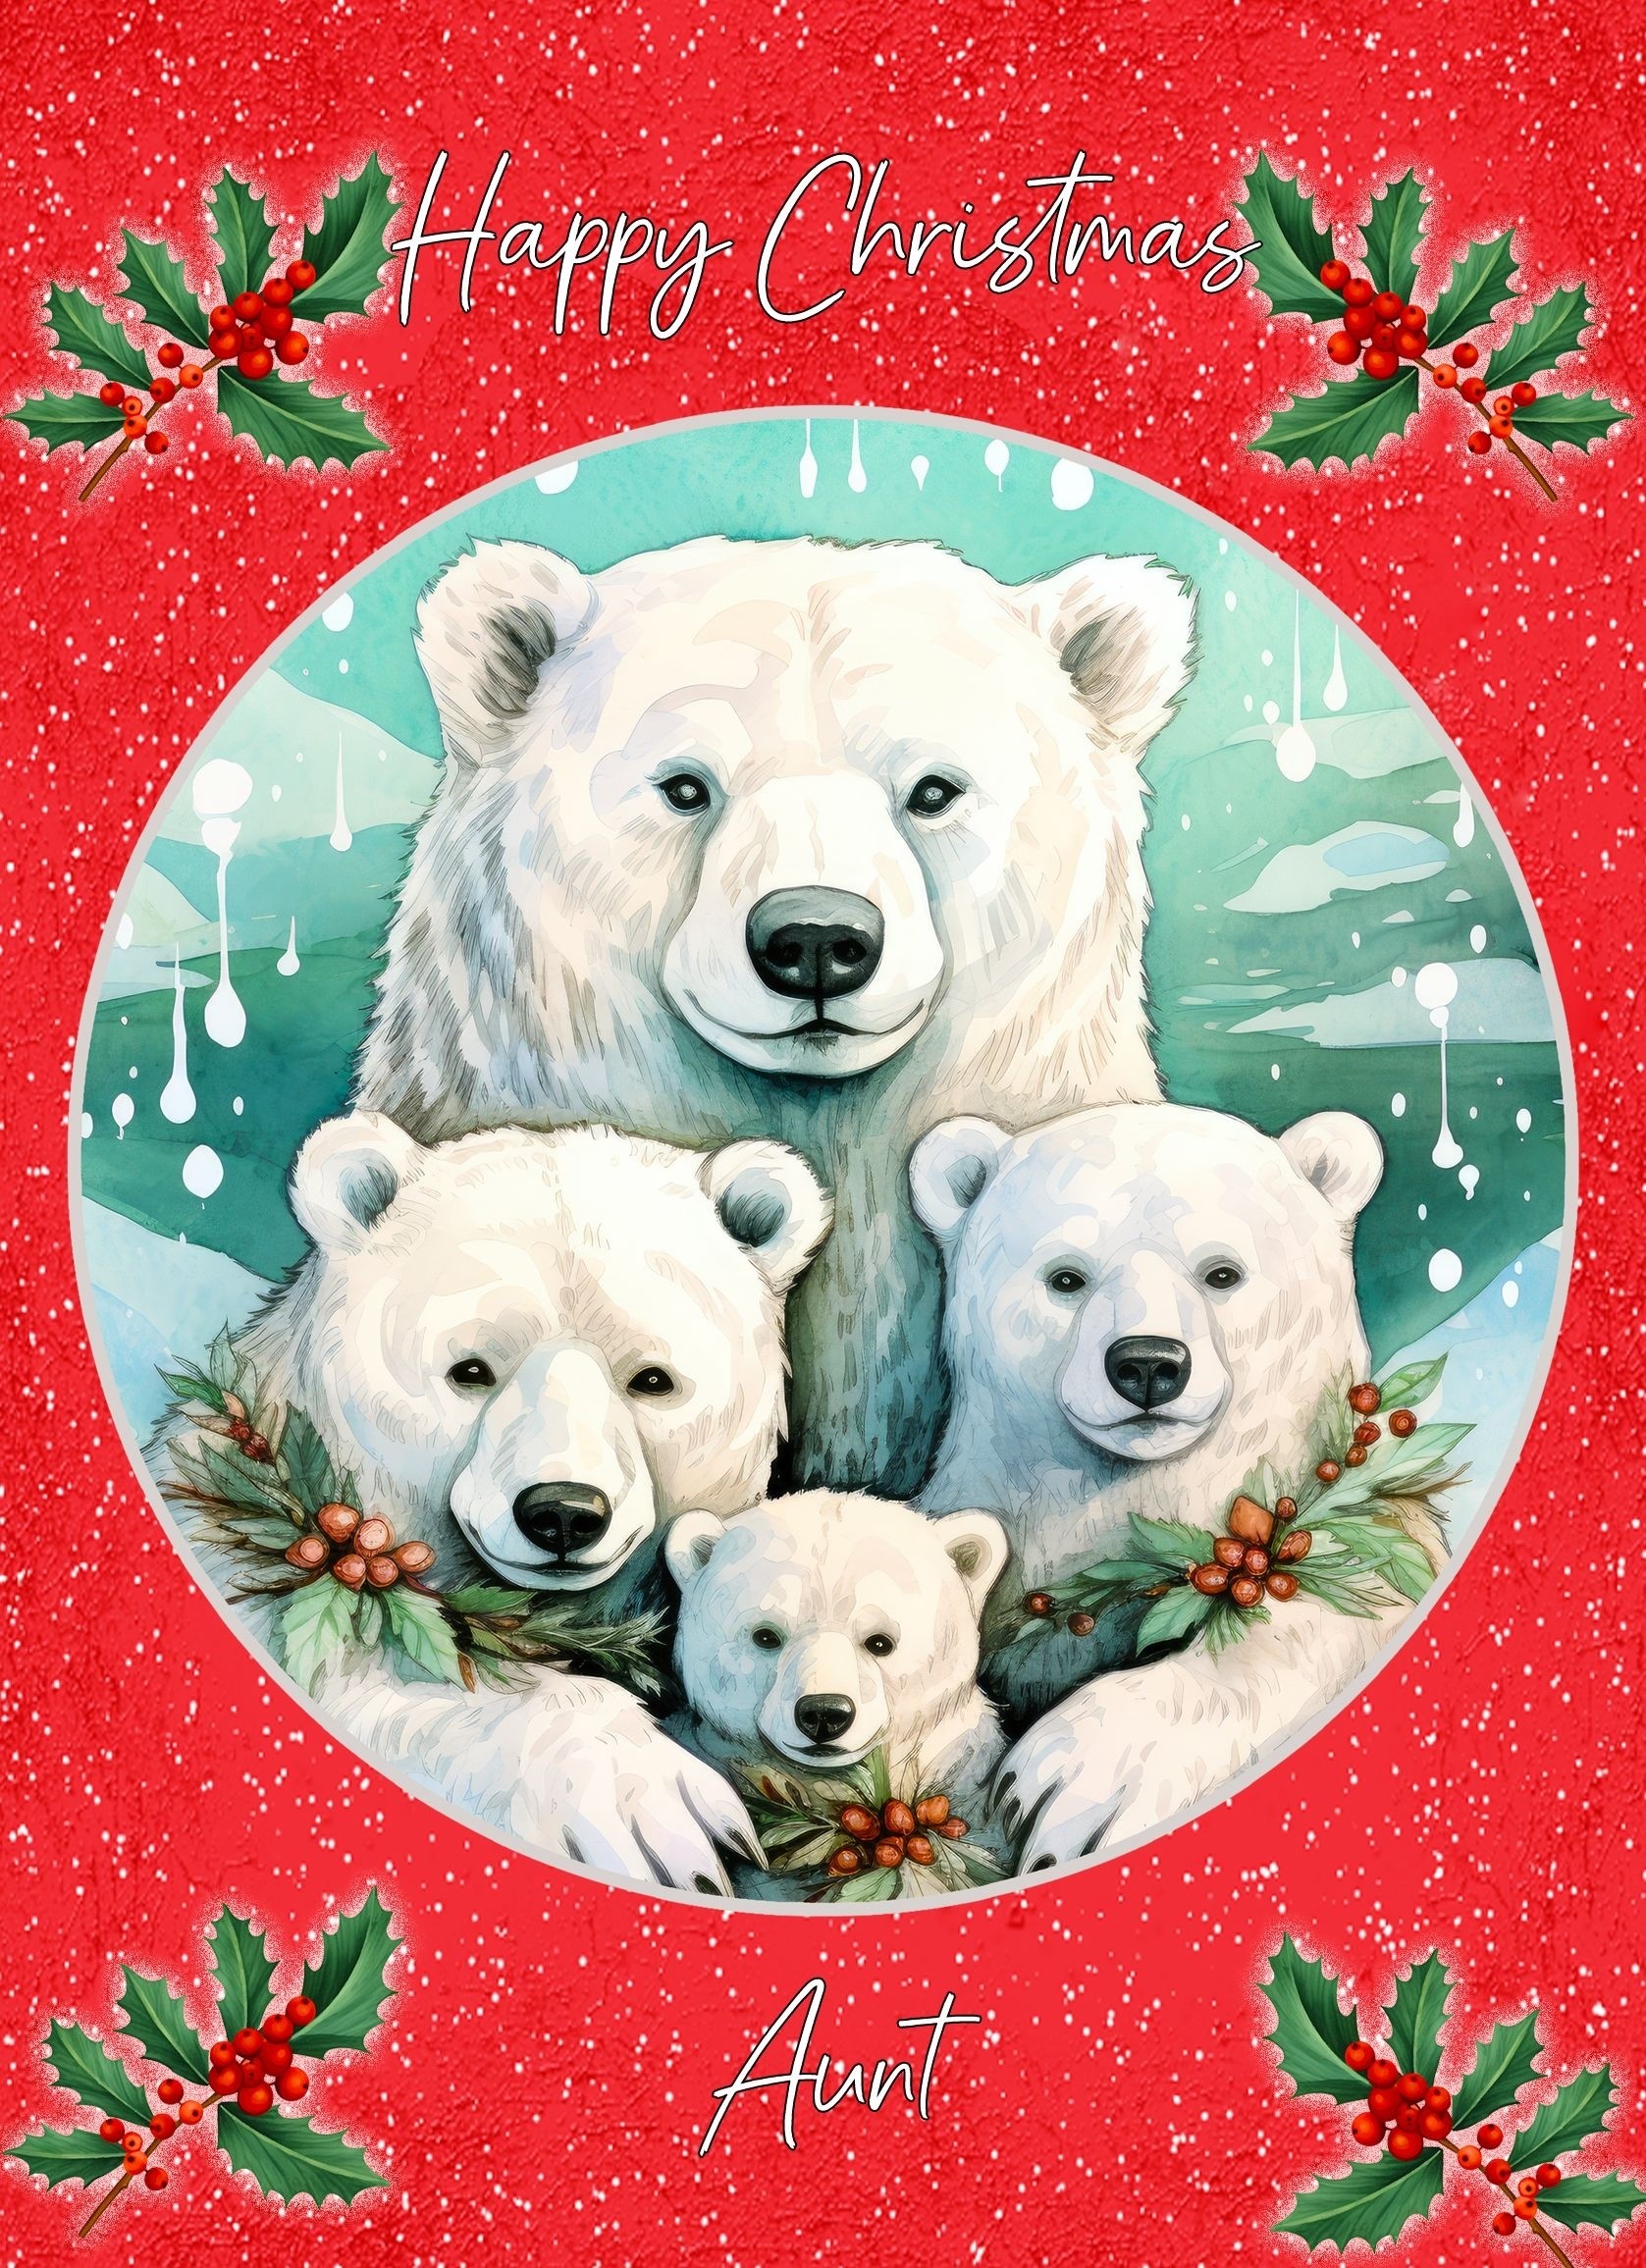 Christmas Card For Aunt (Globe, Polar Bear Family)